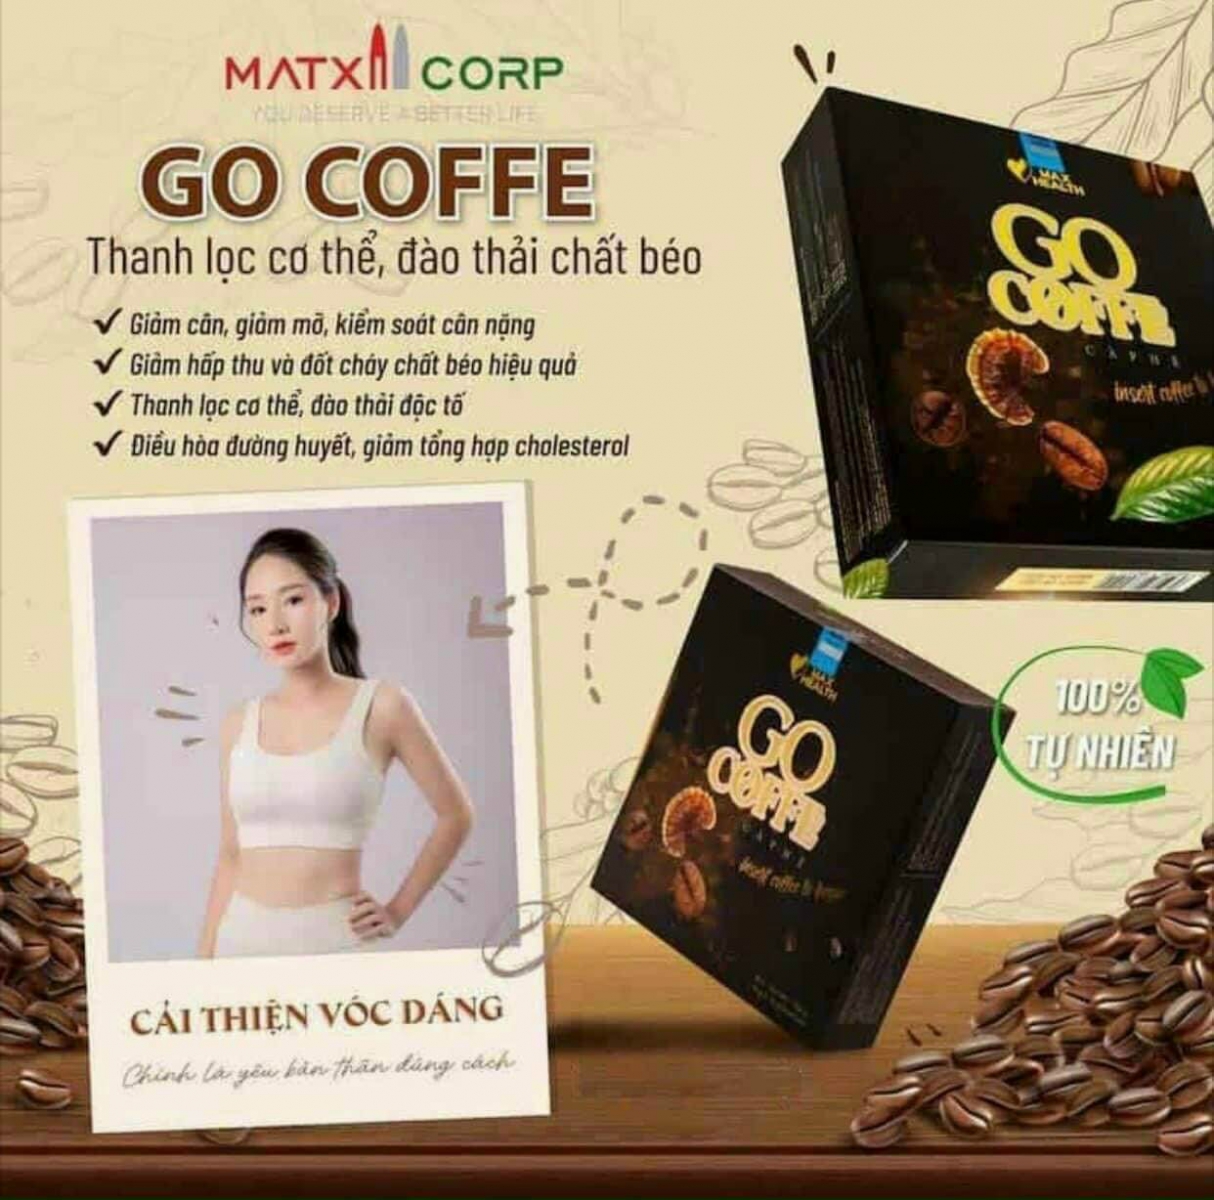 Giảm Cân Go Coffee Hộp 12 Gói Hàng Chính Hãng giảm cân an toàn - hiệu quả